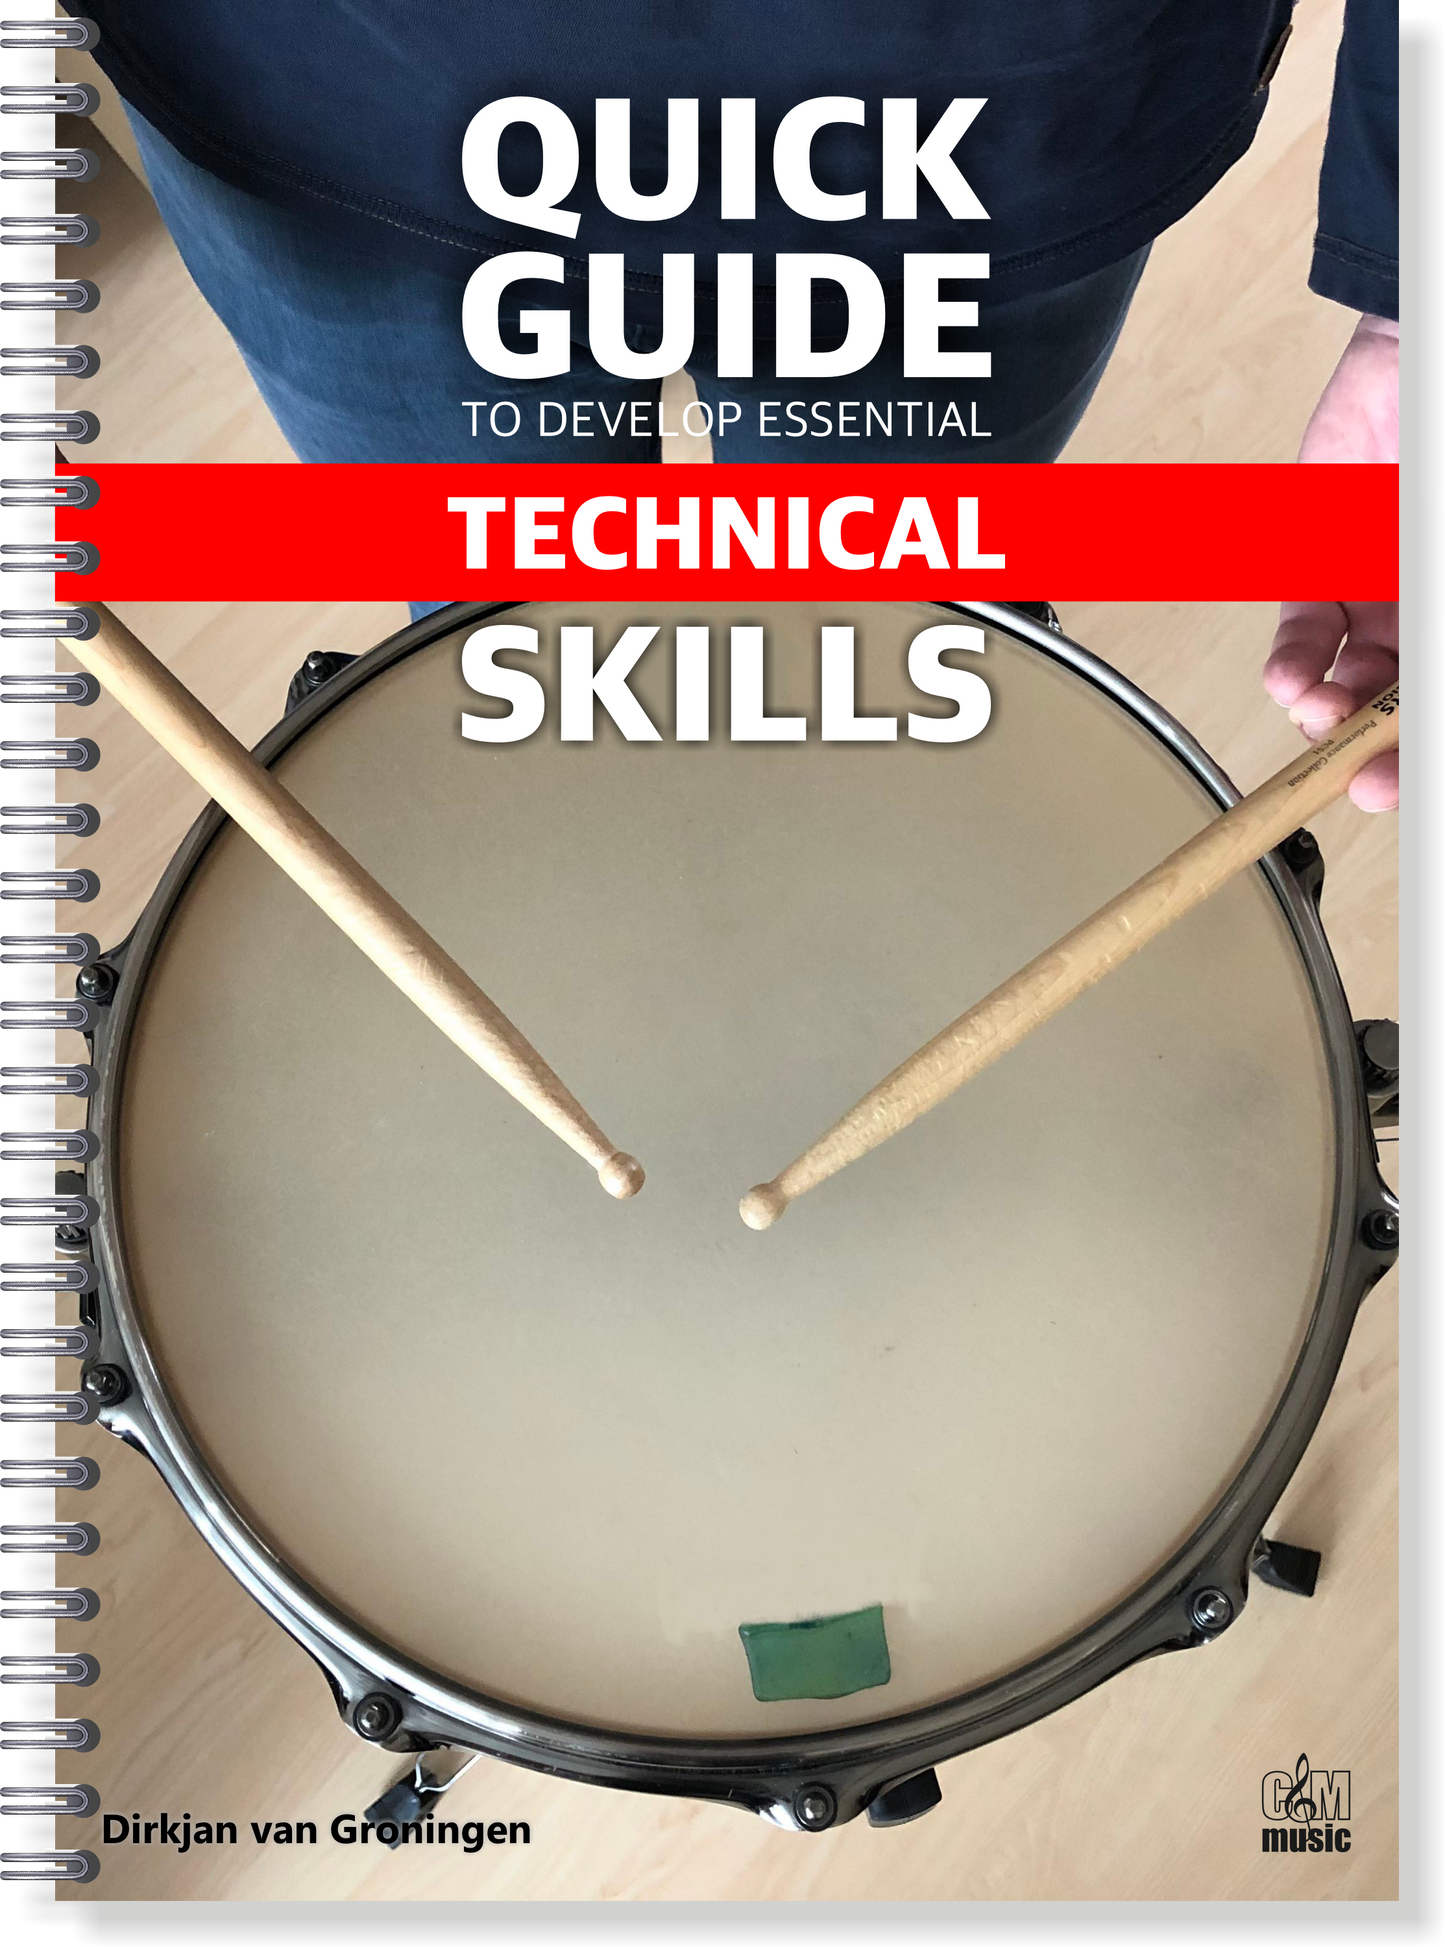 Quick Guide The Develop Essential Technical Skills | Dirkjan van Groningen